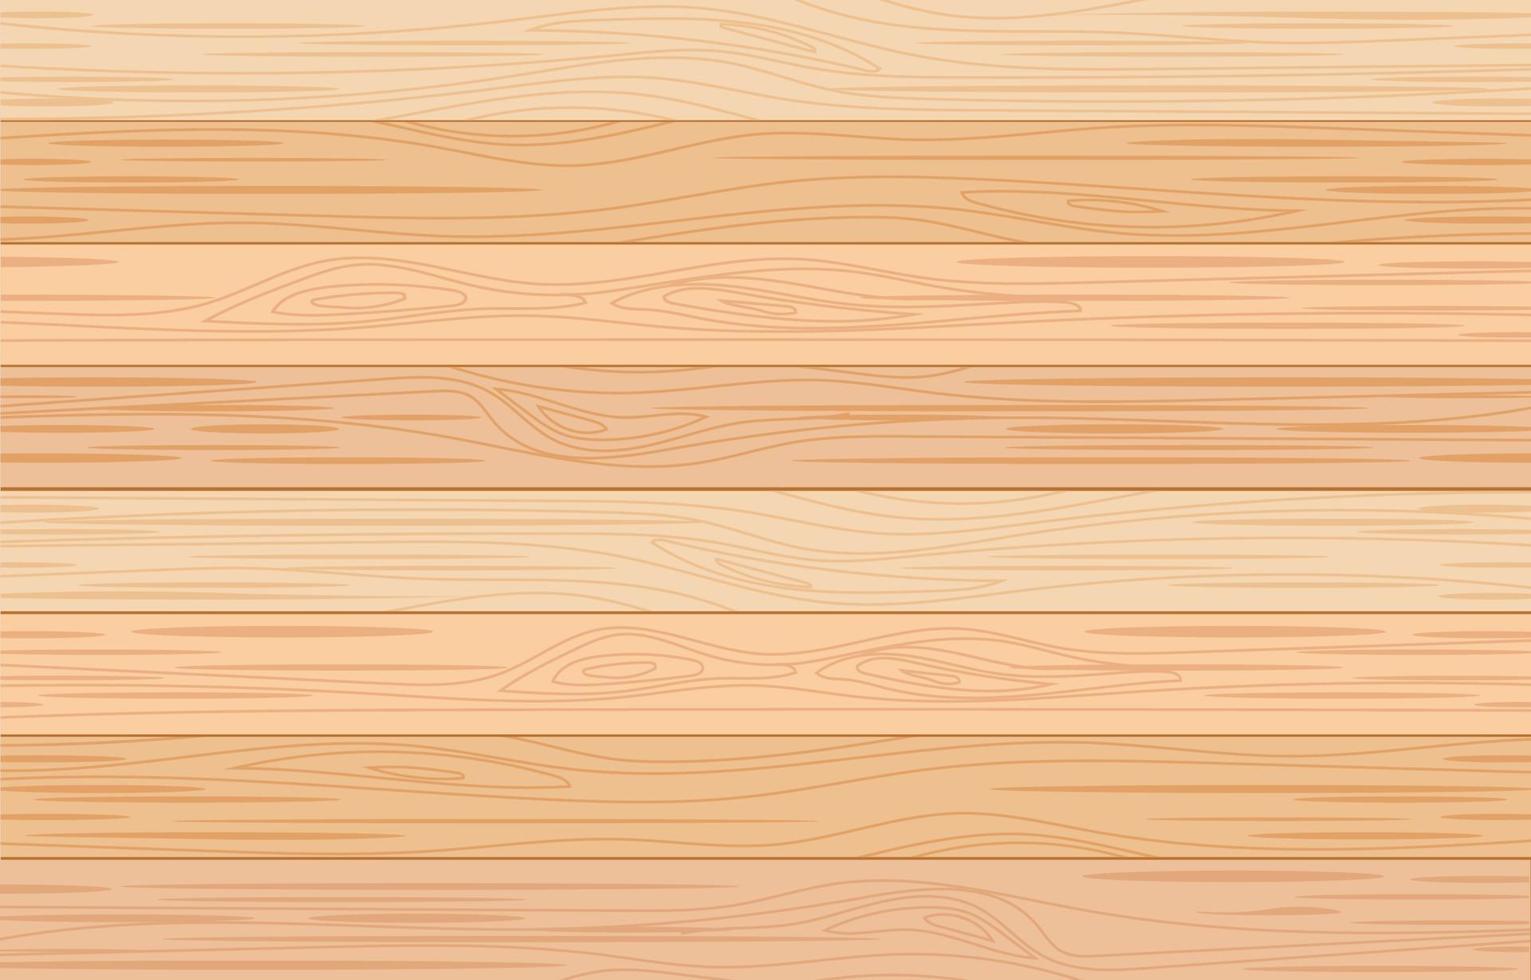 Holz Hintergrund Textur vektor